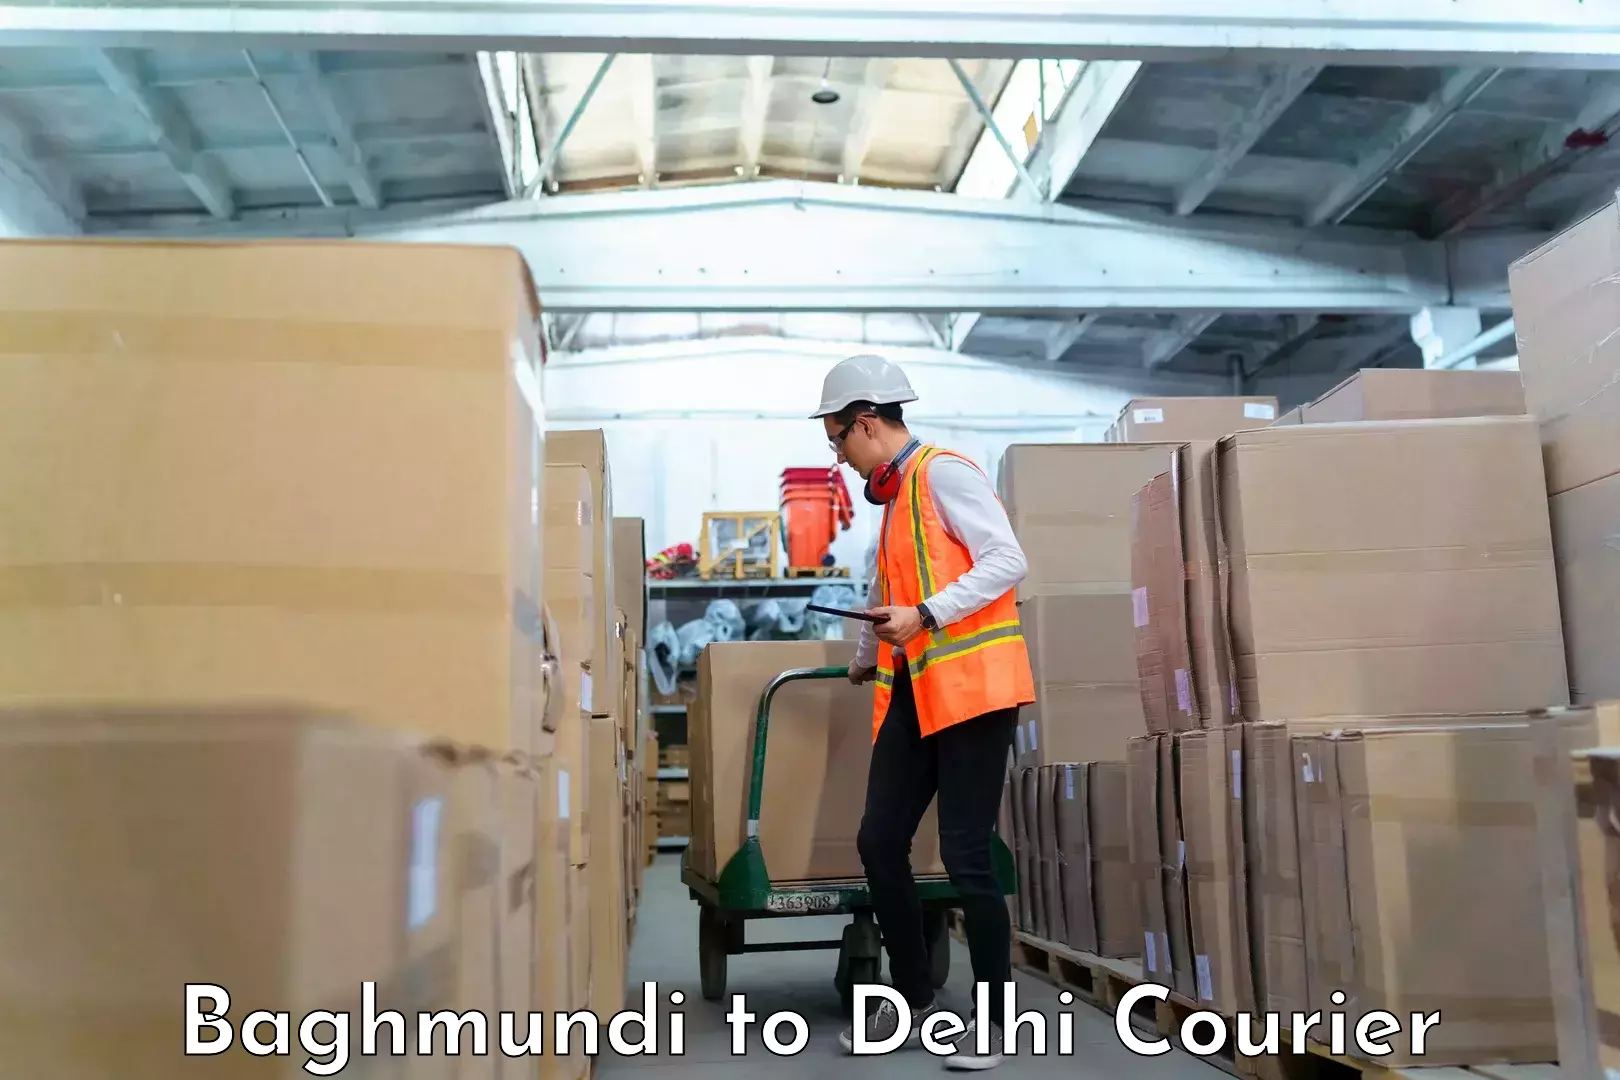 Baggage relocation service Baghmundi to Delhi